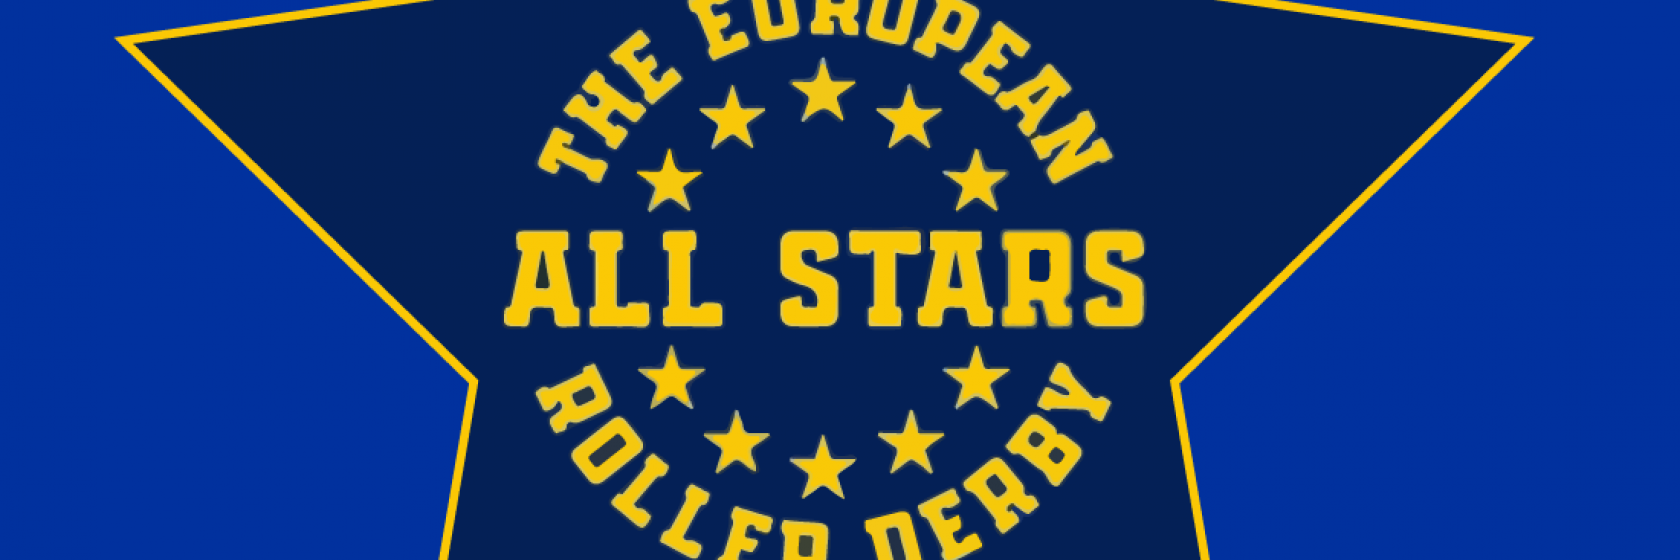 Roller Derby EUROPE